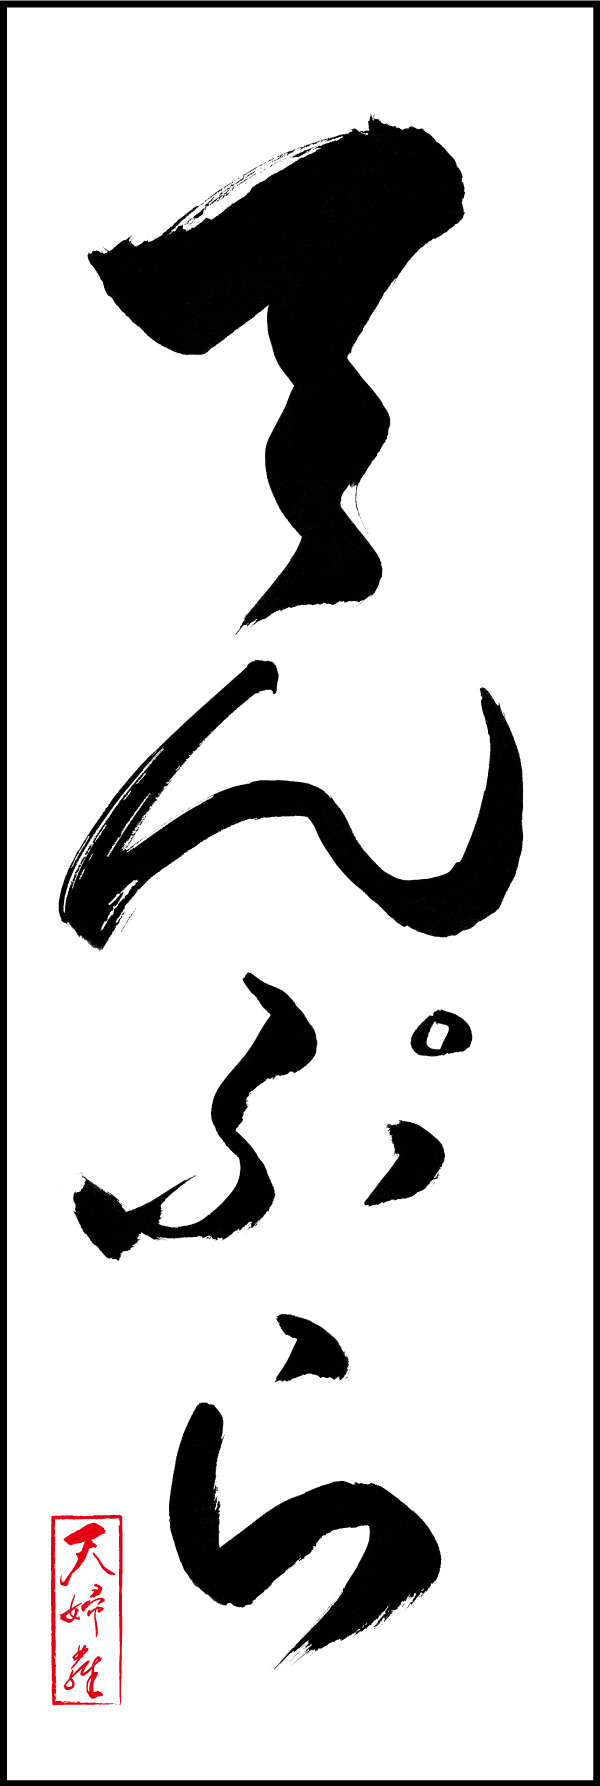 てんぷら 191_01「てんぷら」ののぼりです。江戸文字職人 加藤木大介氏による、手書きの筆文字です。完全書き下ろし、唯一無二ののぼりは当店だけのオリジナル商品です。（M.N） 